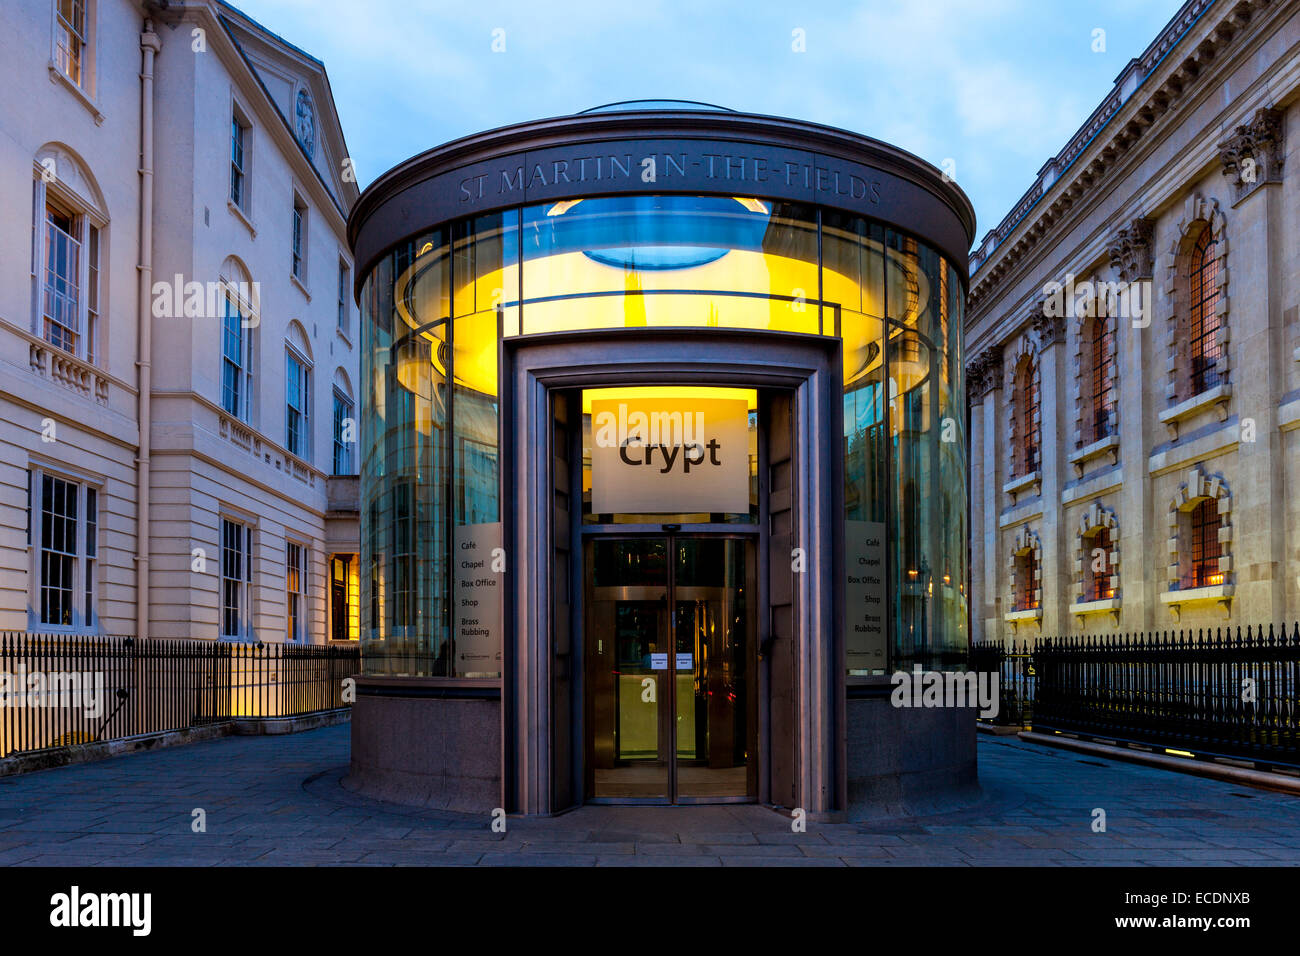 La crypte, St Martin sur le terrain, Londres, Angleterre Banque D'Images